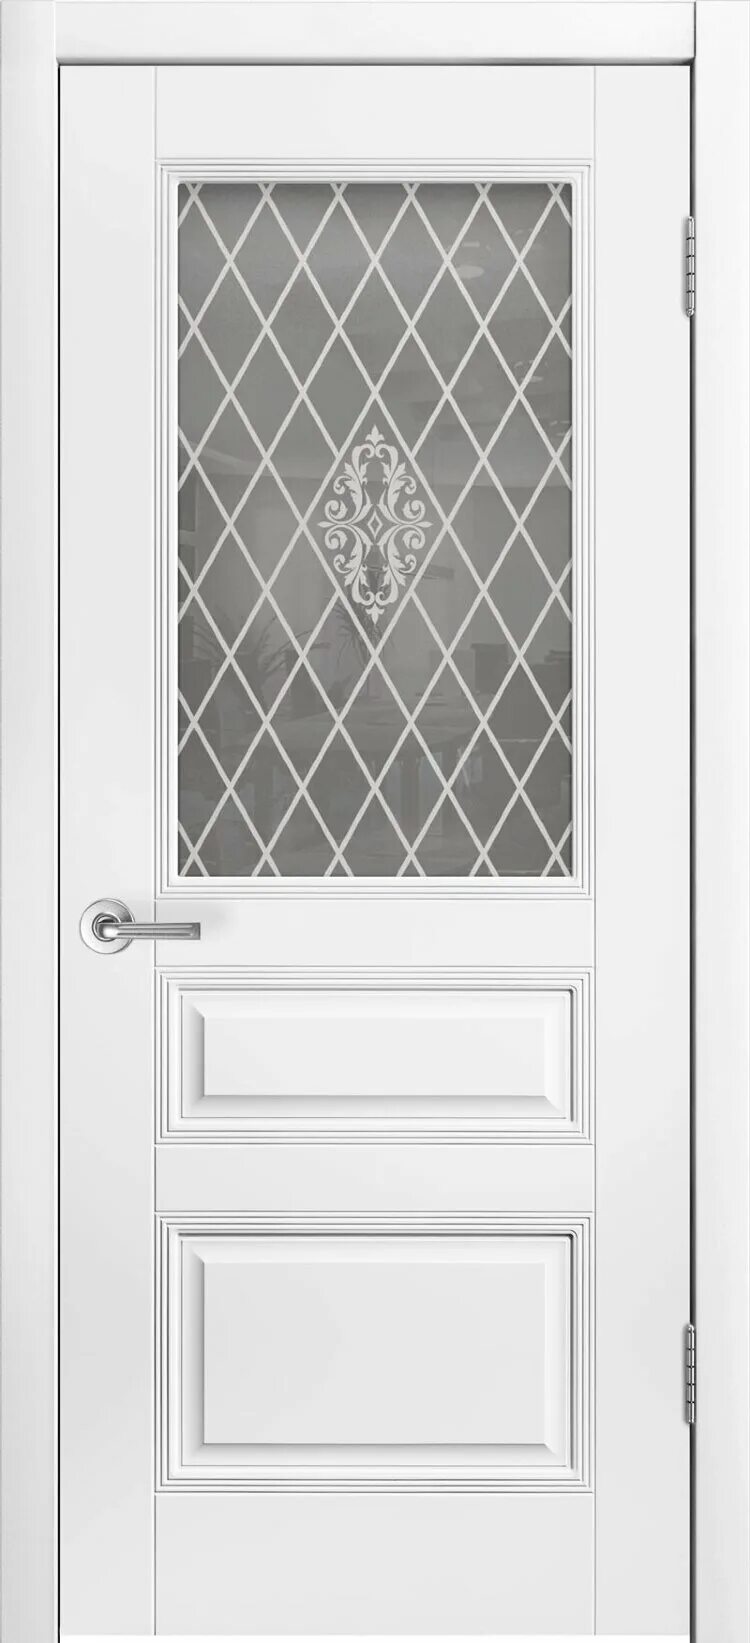 Трио Грейс в1 белая эмаль. Межкомнатная дверь Ария Грэйс 2 ПГ (белая эмаль/патина серебро). Дверь Аккорд ПГ эмаль белая. Двери шикодорс трио Грейс глухая с патиной серебро. Дверь классика стекло